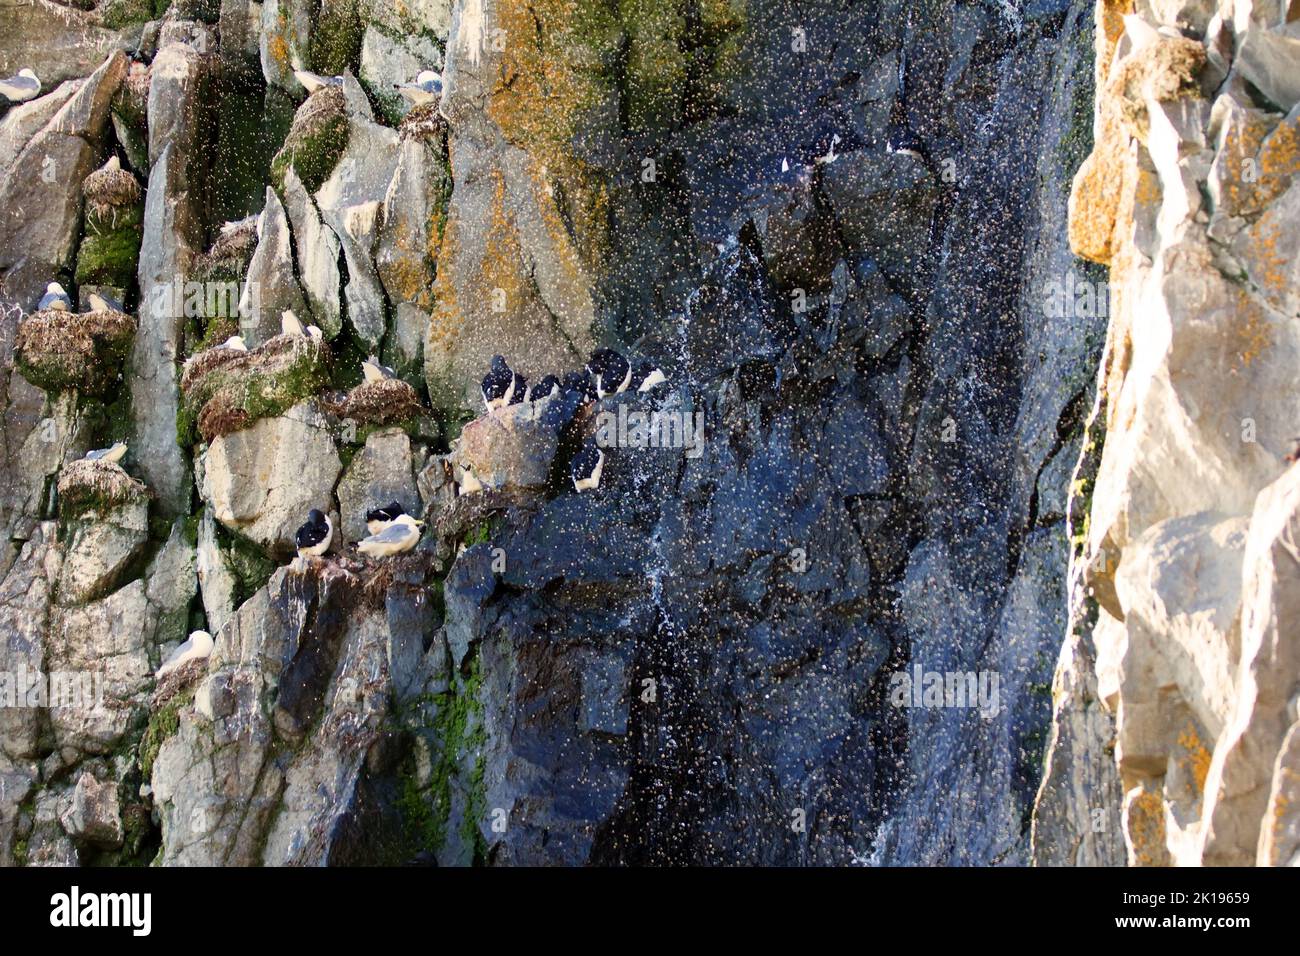 L'acqua scorre lungo le rocce, ma un eccesso di umidità non interferisce con la nidificazione degli uccelli marini (guillemots). TRE Foto Stock